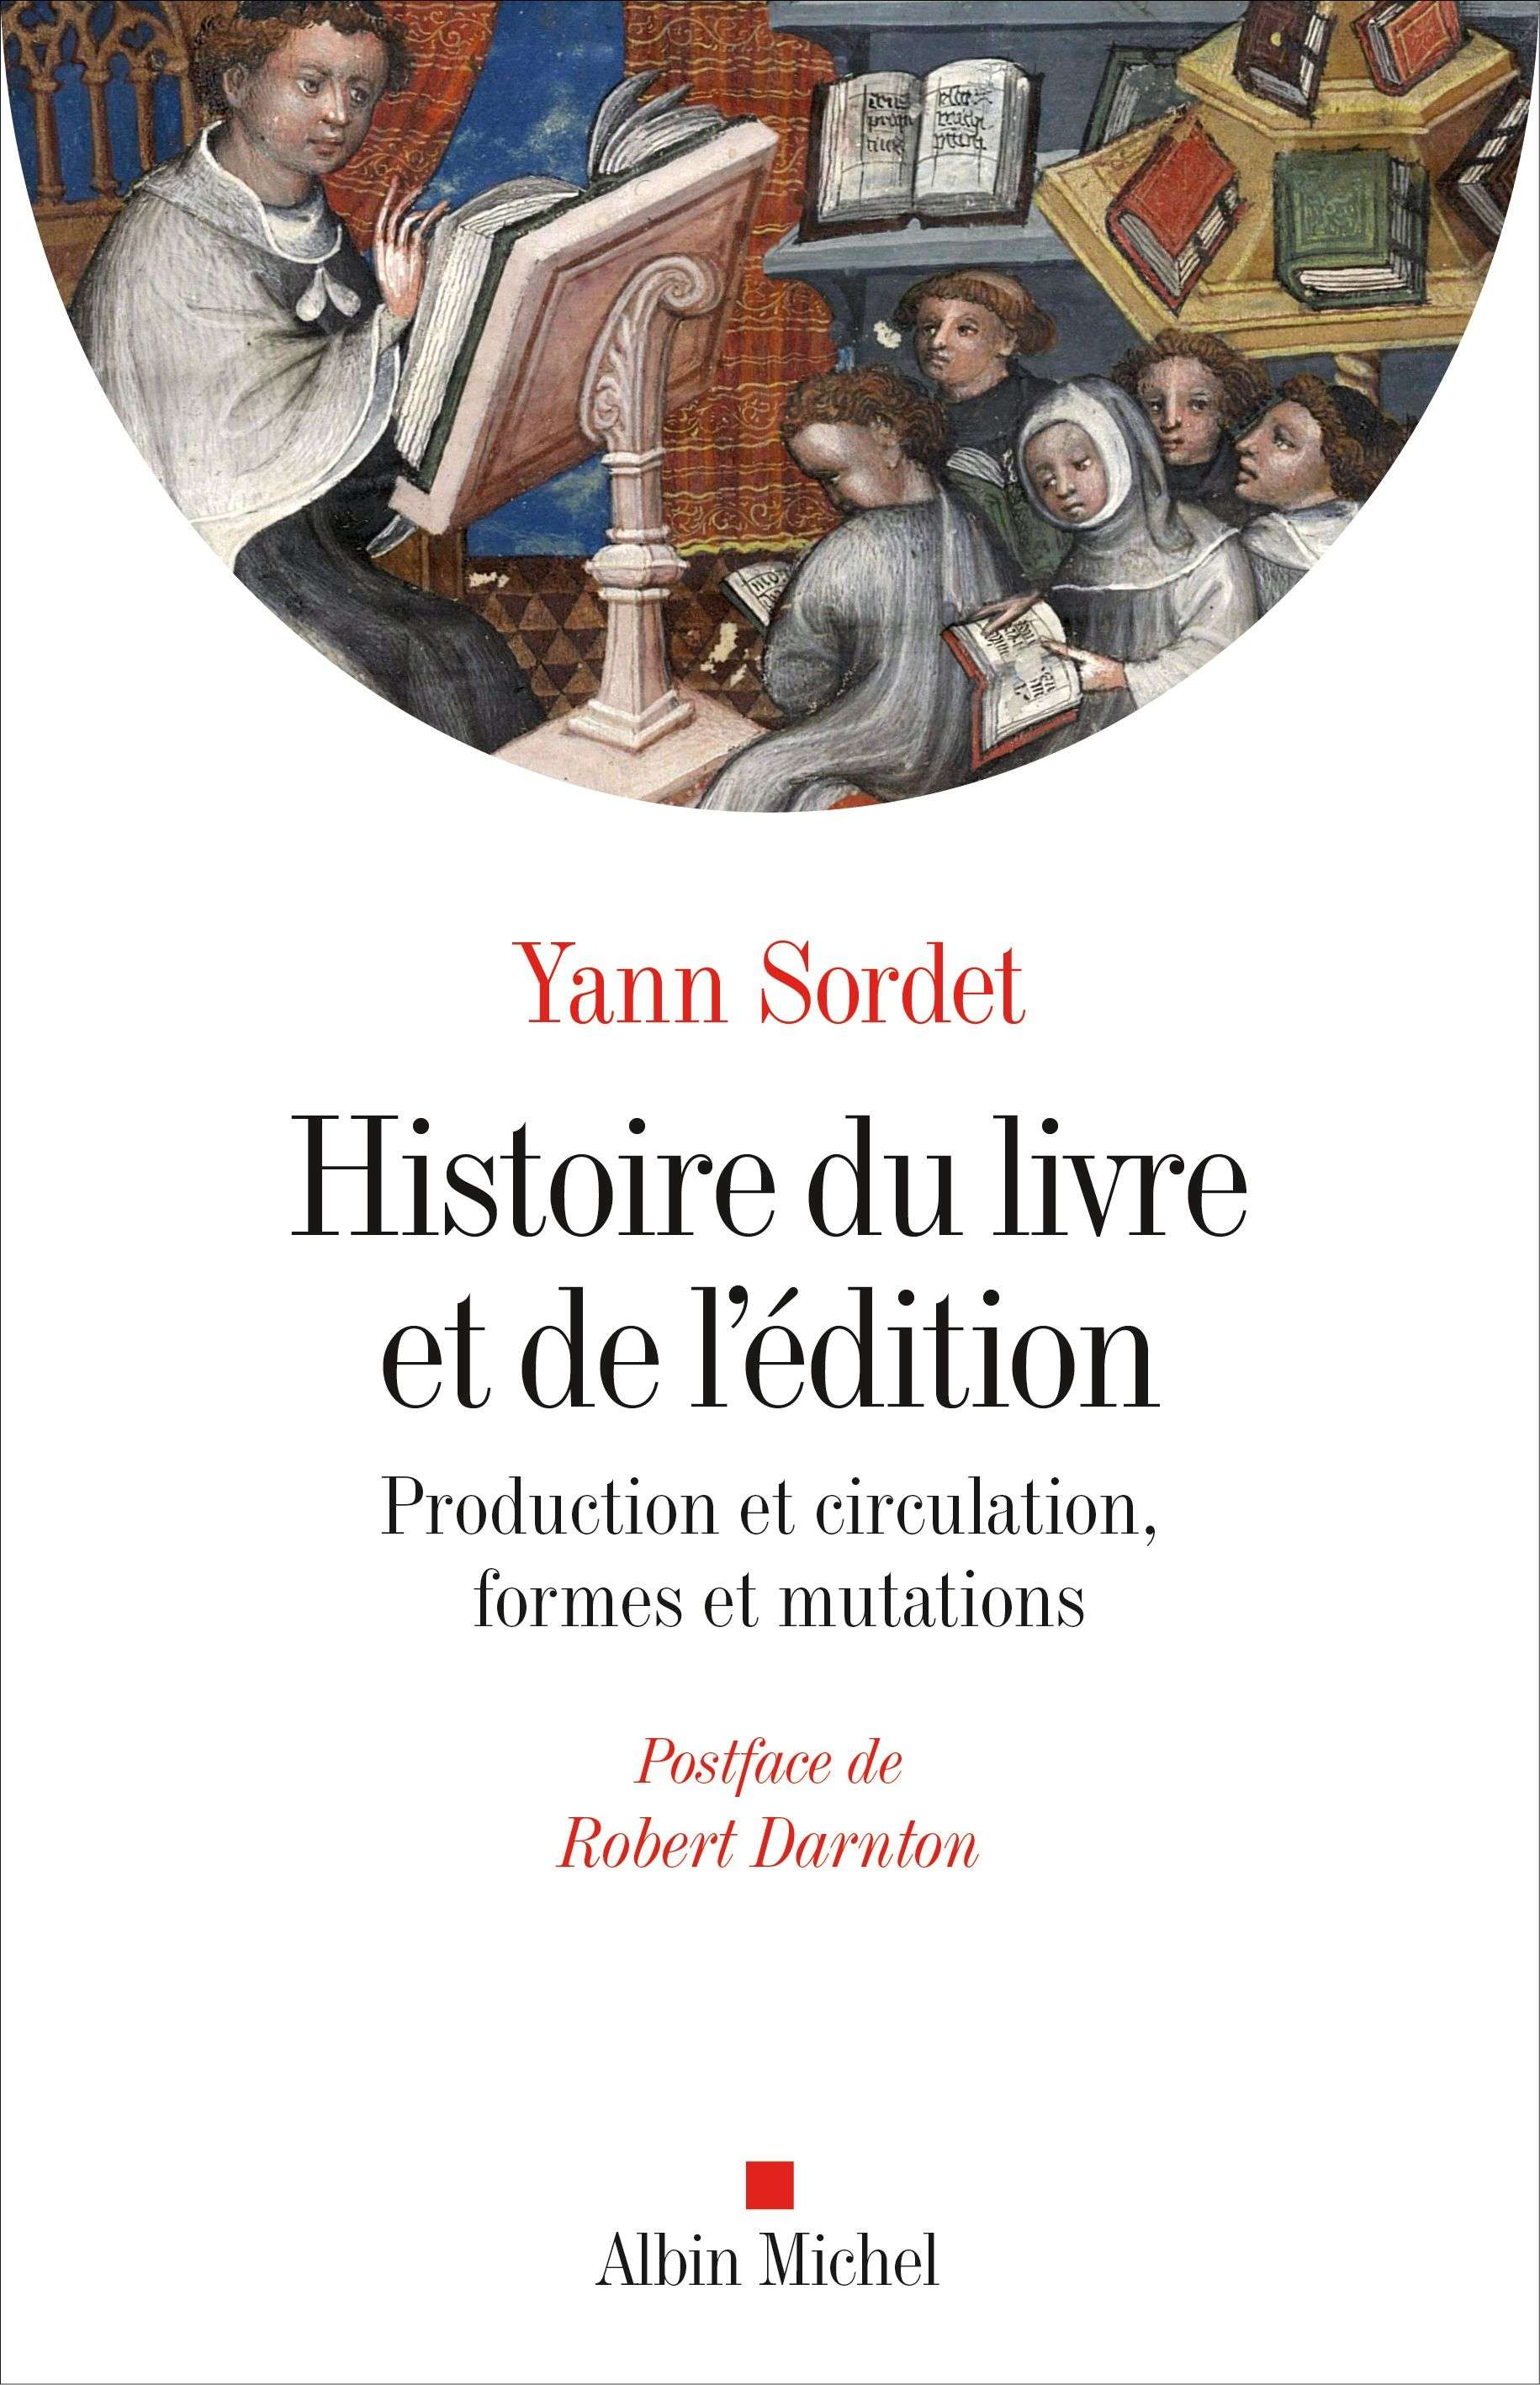 Histoire_du_livre_et_de_l_edition.jpg